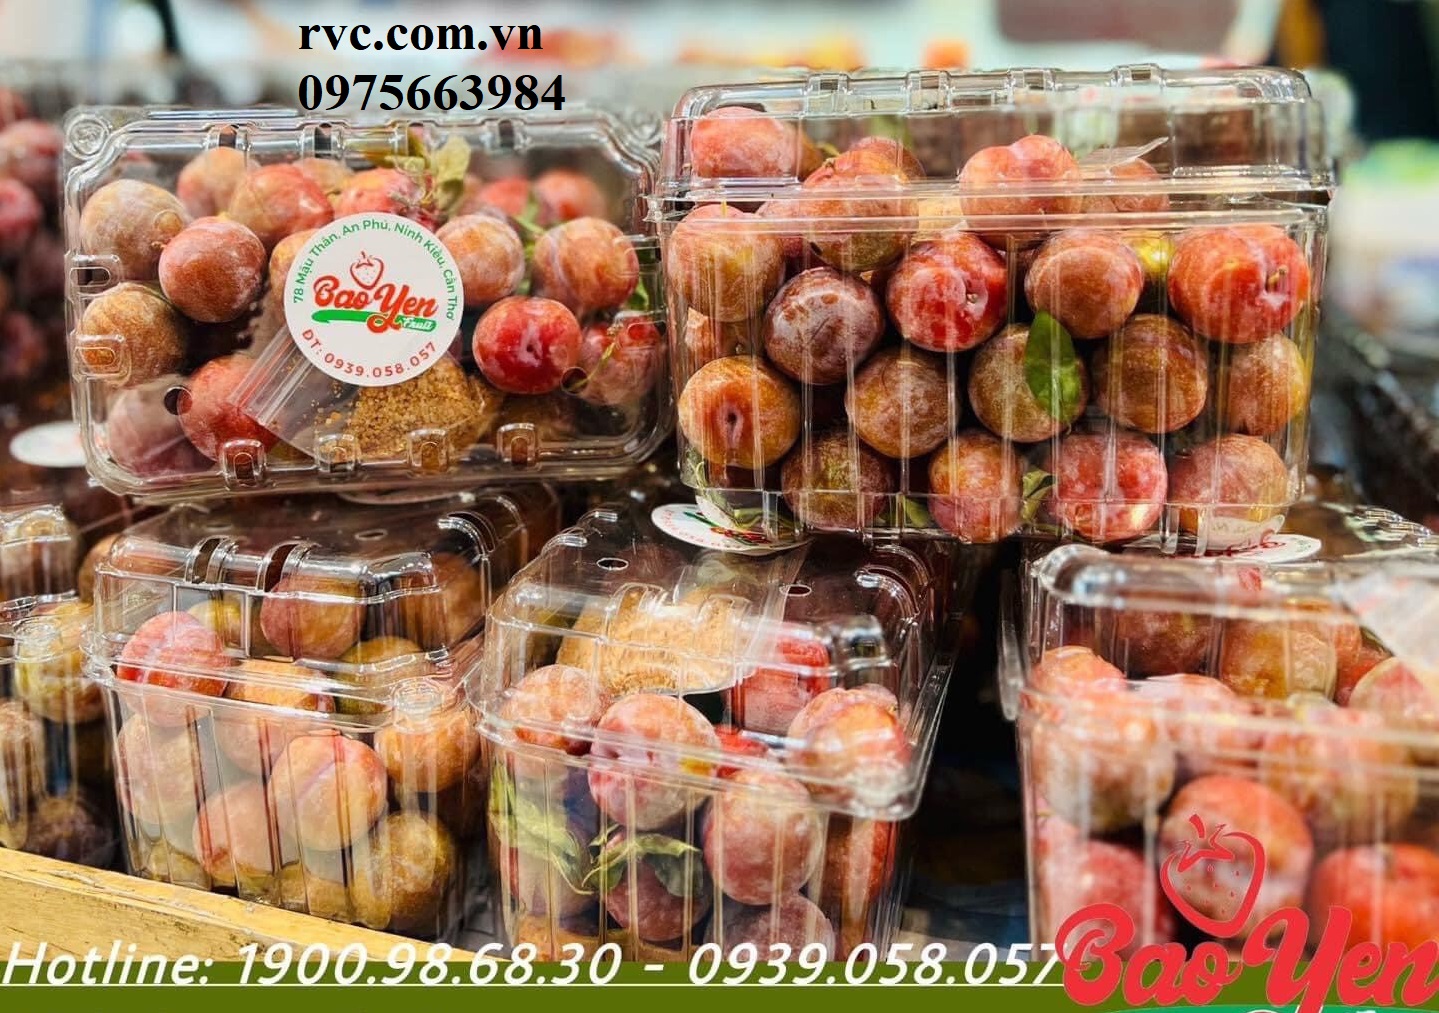 Chuyên sỉ hộp nhựa đựng trái cây 1kg P1000B tại Sài Gòn  1687344466_Hop_dung_man_21.1